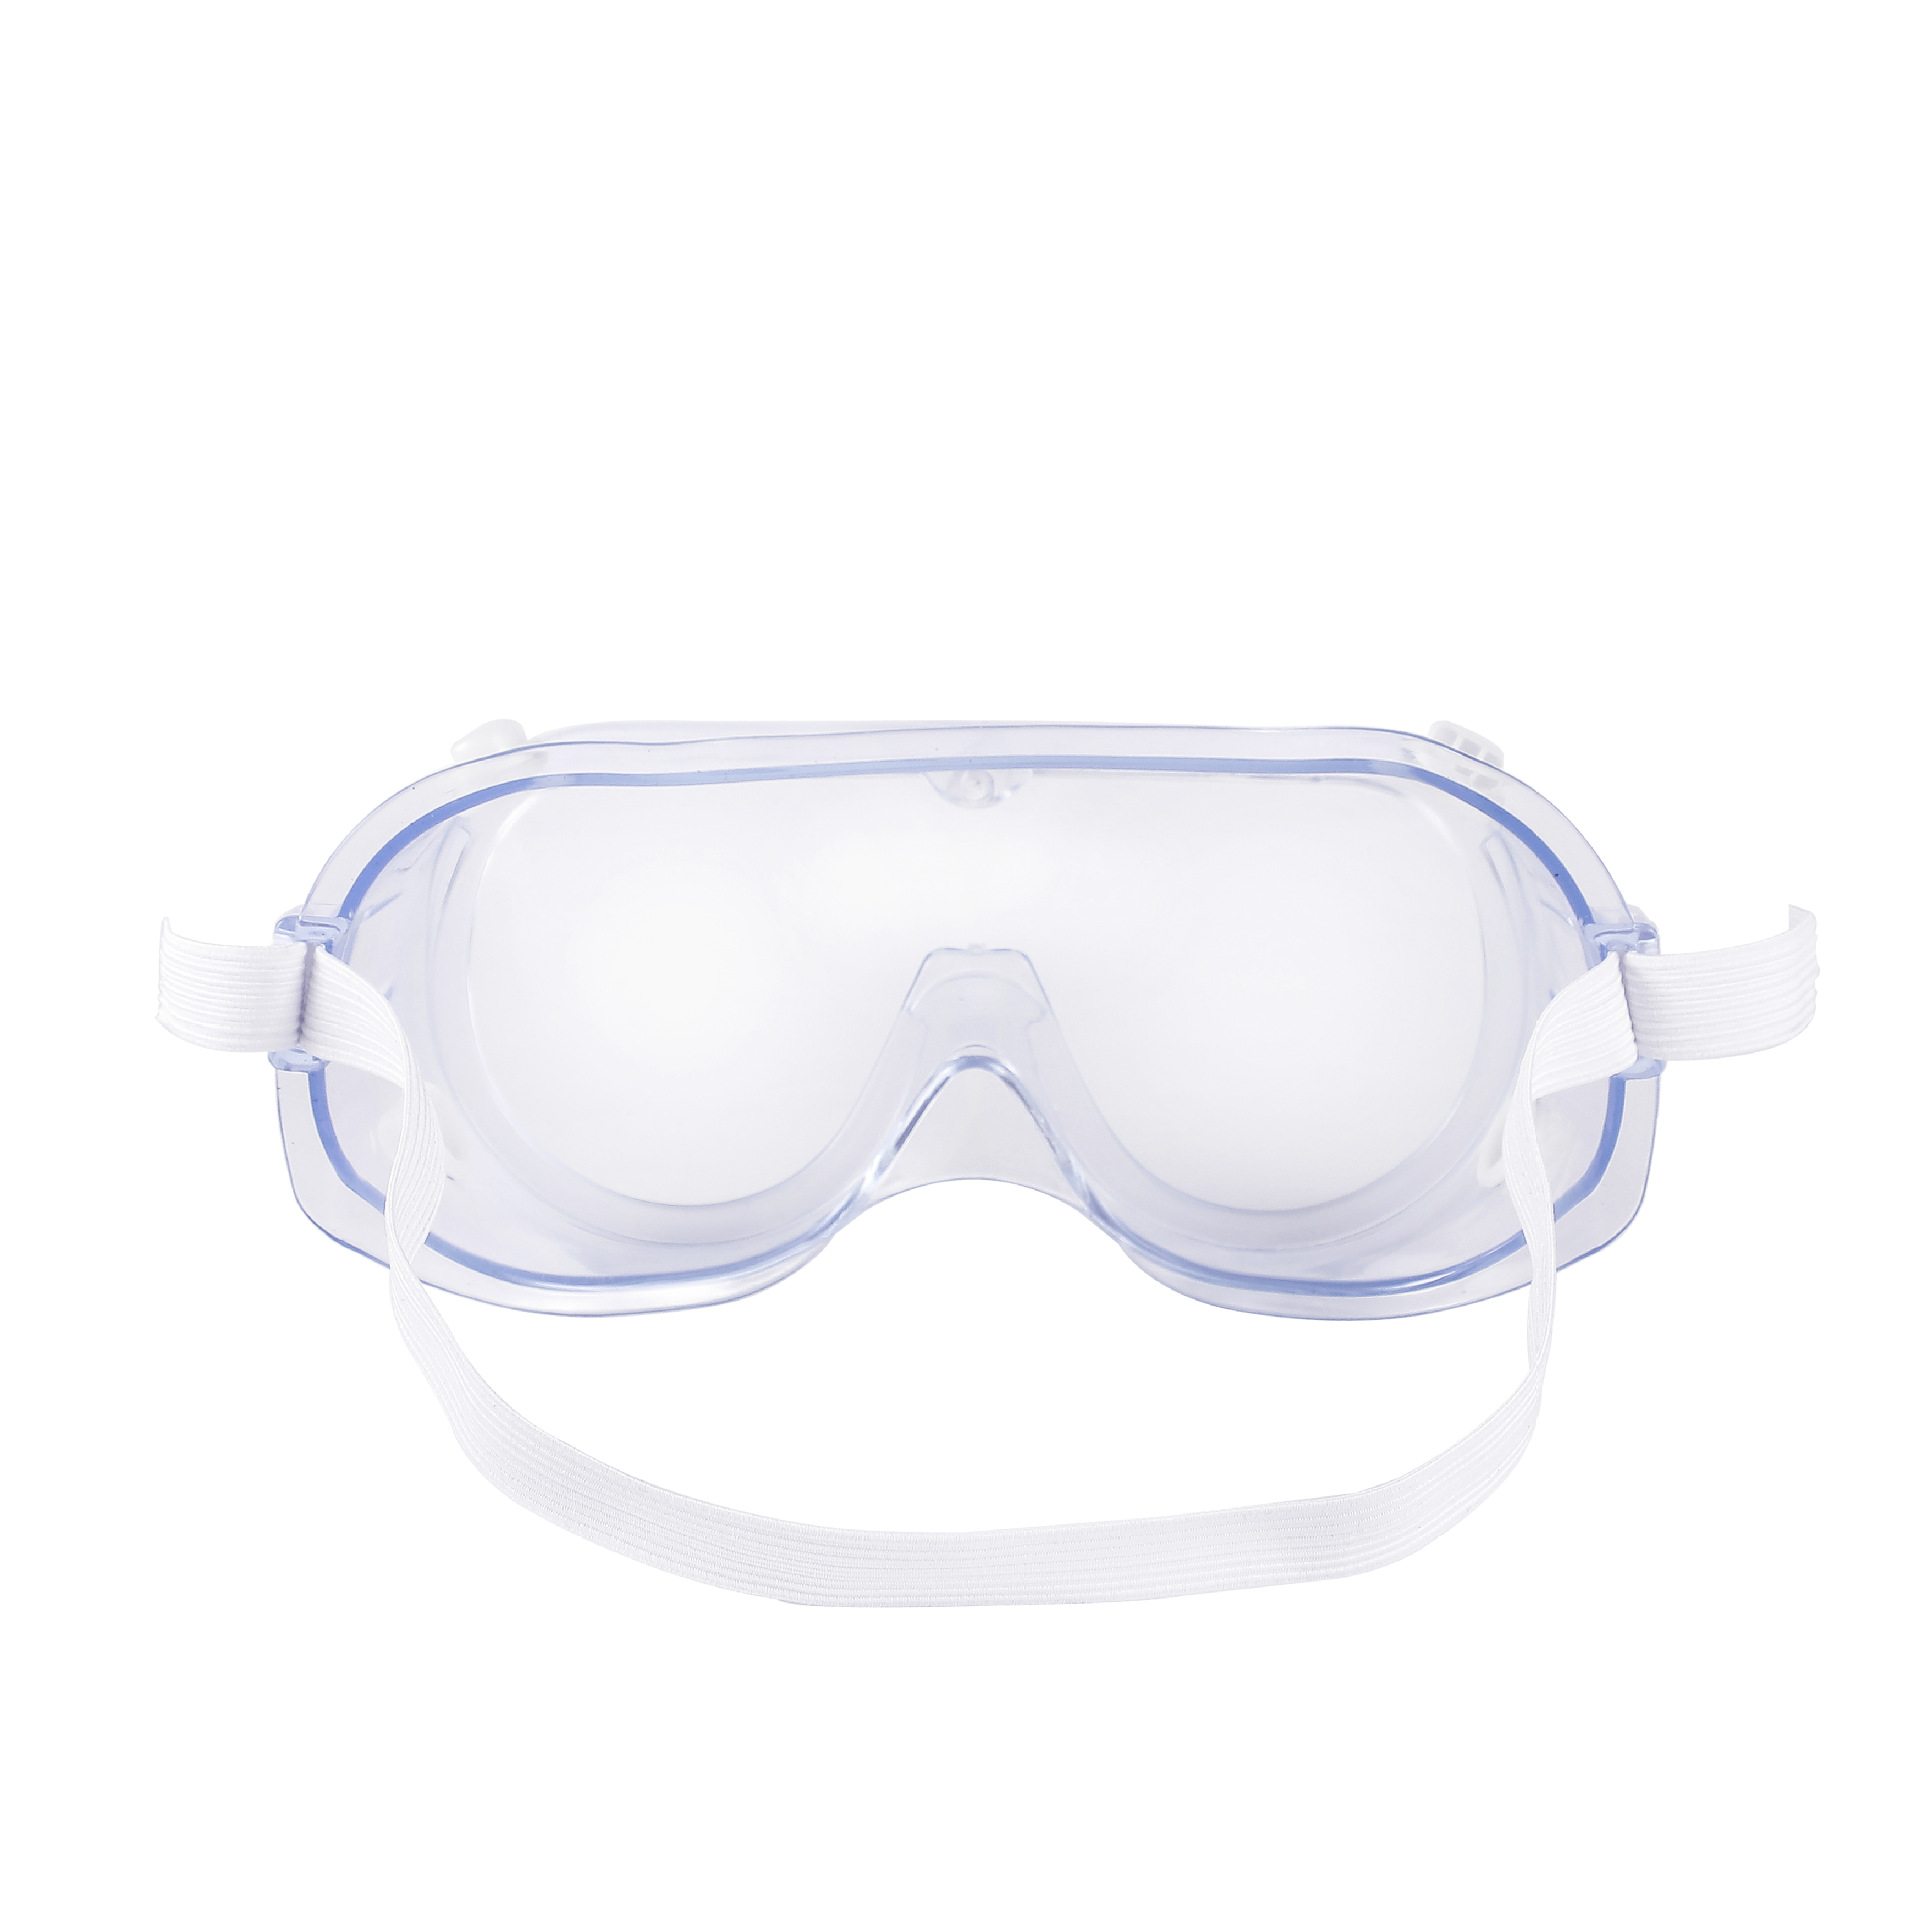 Wielofunkcyjne okulary przeciwzapalne okulary ochronne okulary ochronne laboratorium robocze okulary ochronne okulary ochronne chroniące przed rozpryskami